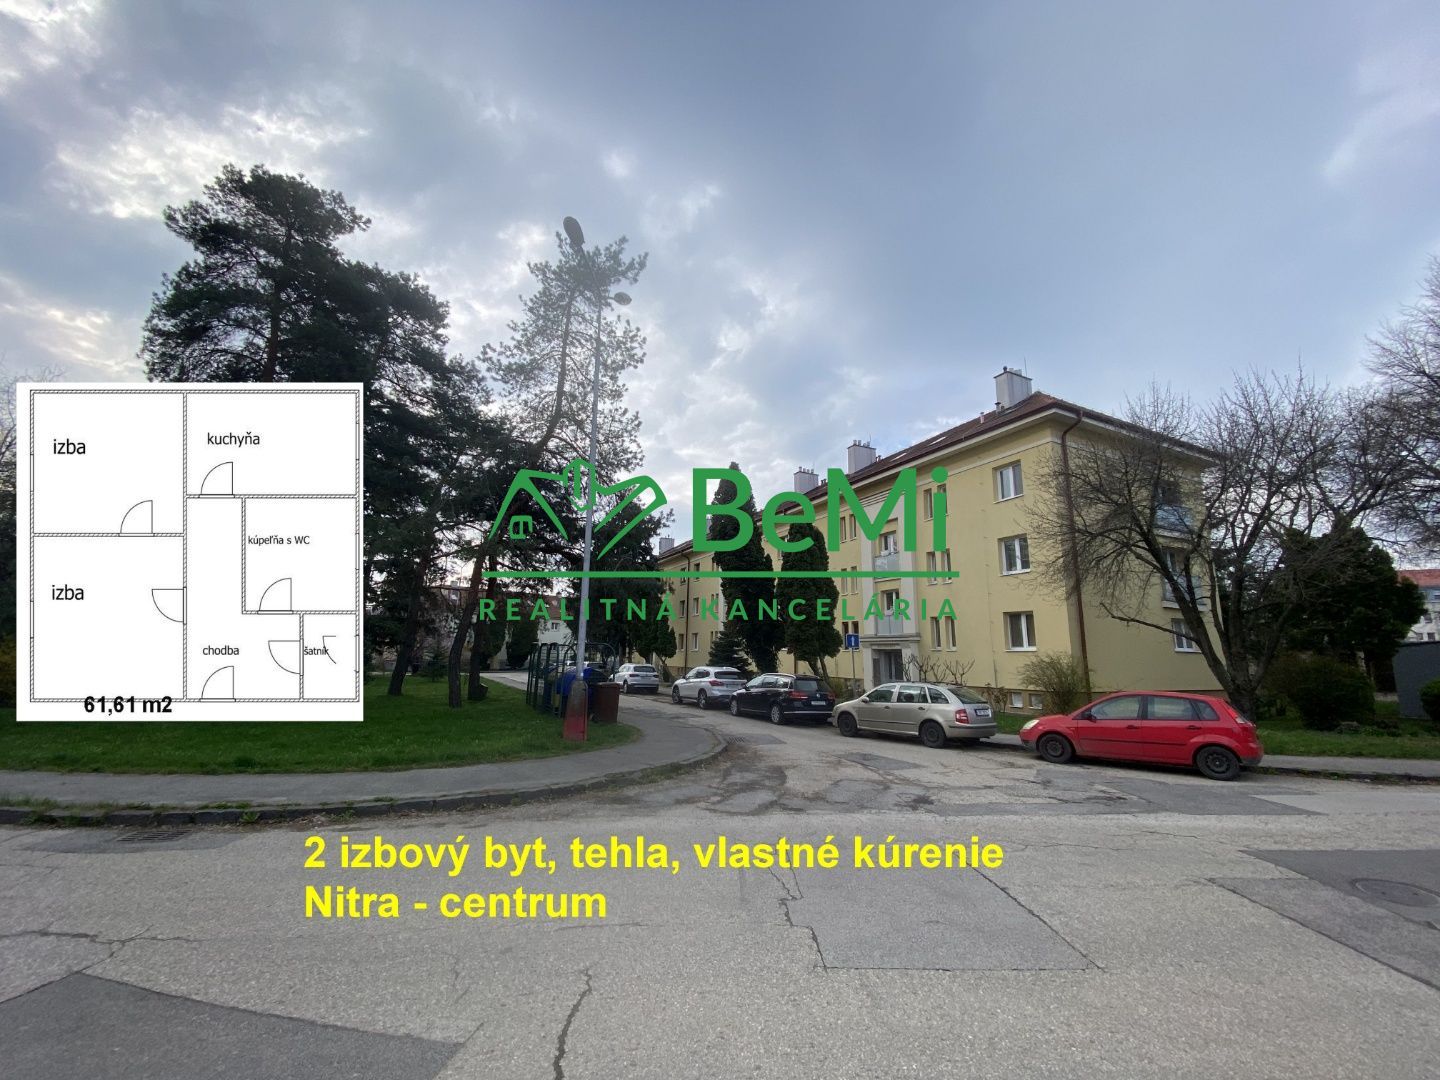 2 izbový byt Nitra - centrum, tehlový,bytový dom, vlastné kúrenie ID 441-112-MIGa